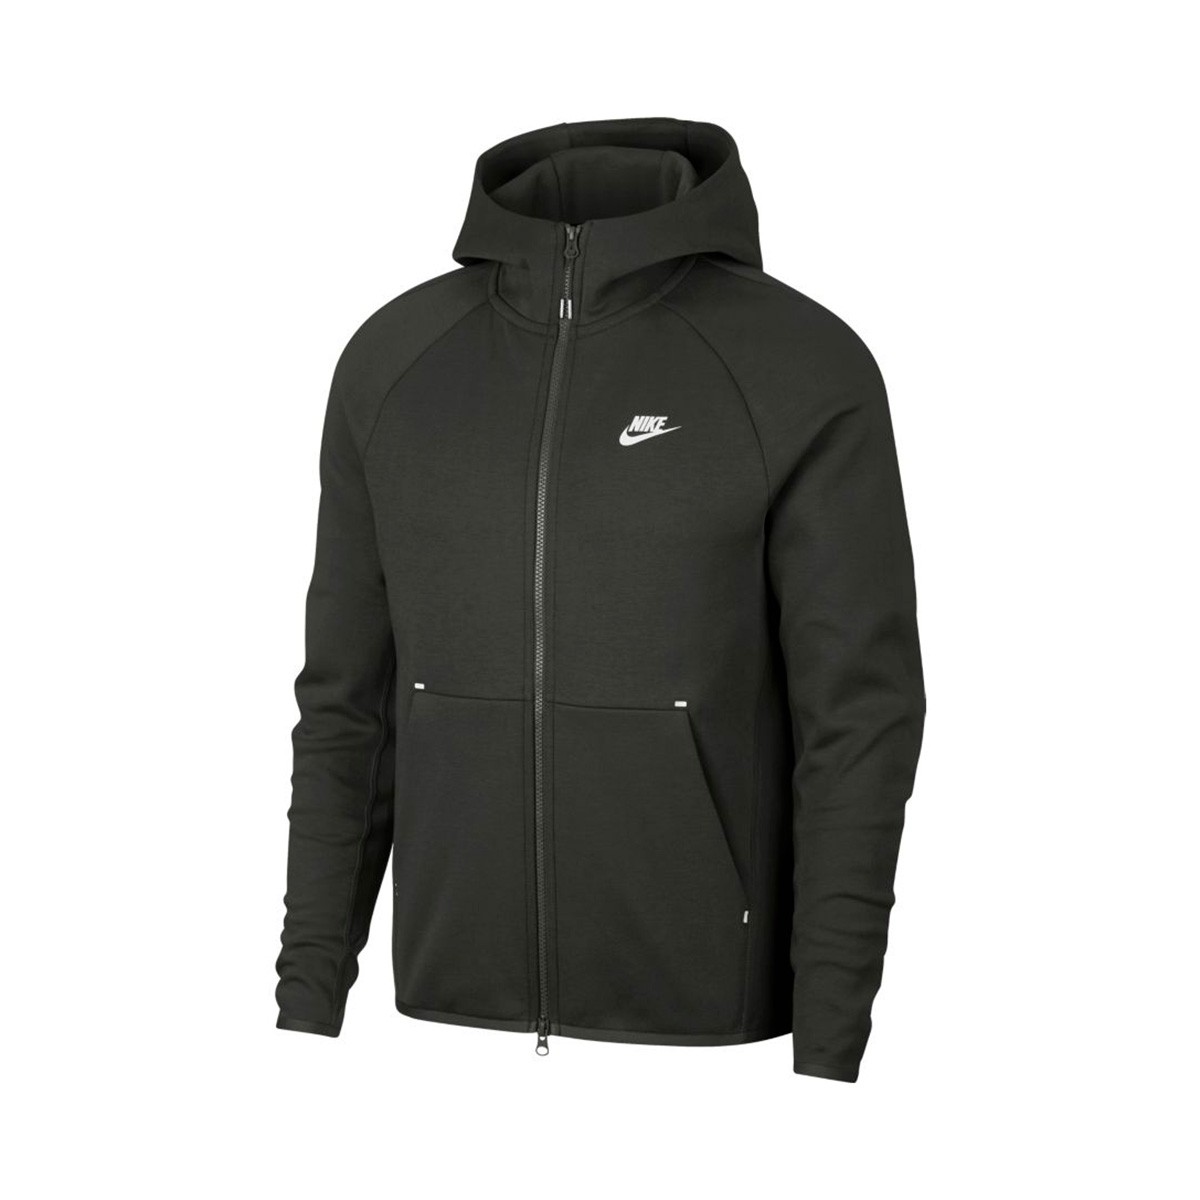 Jacket Nike Sportswear Tech Fleece 2019 